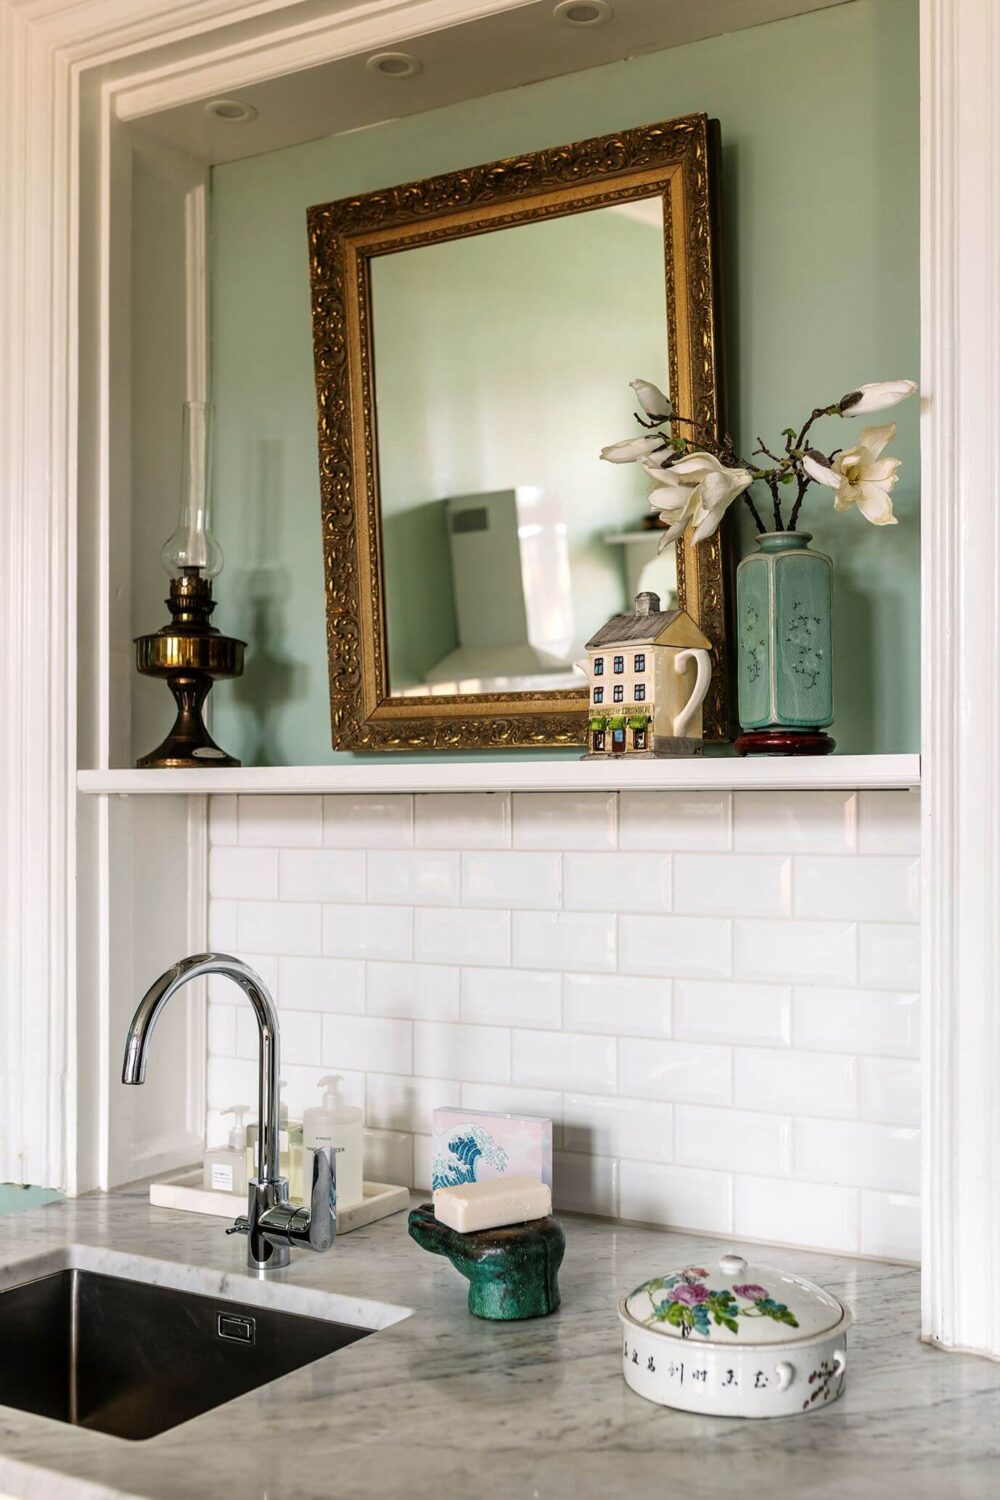 cozinha-detalhe-espelho-hortelã-verde-paredes-nordroom